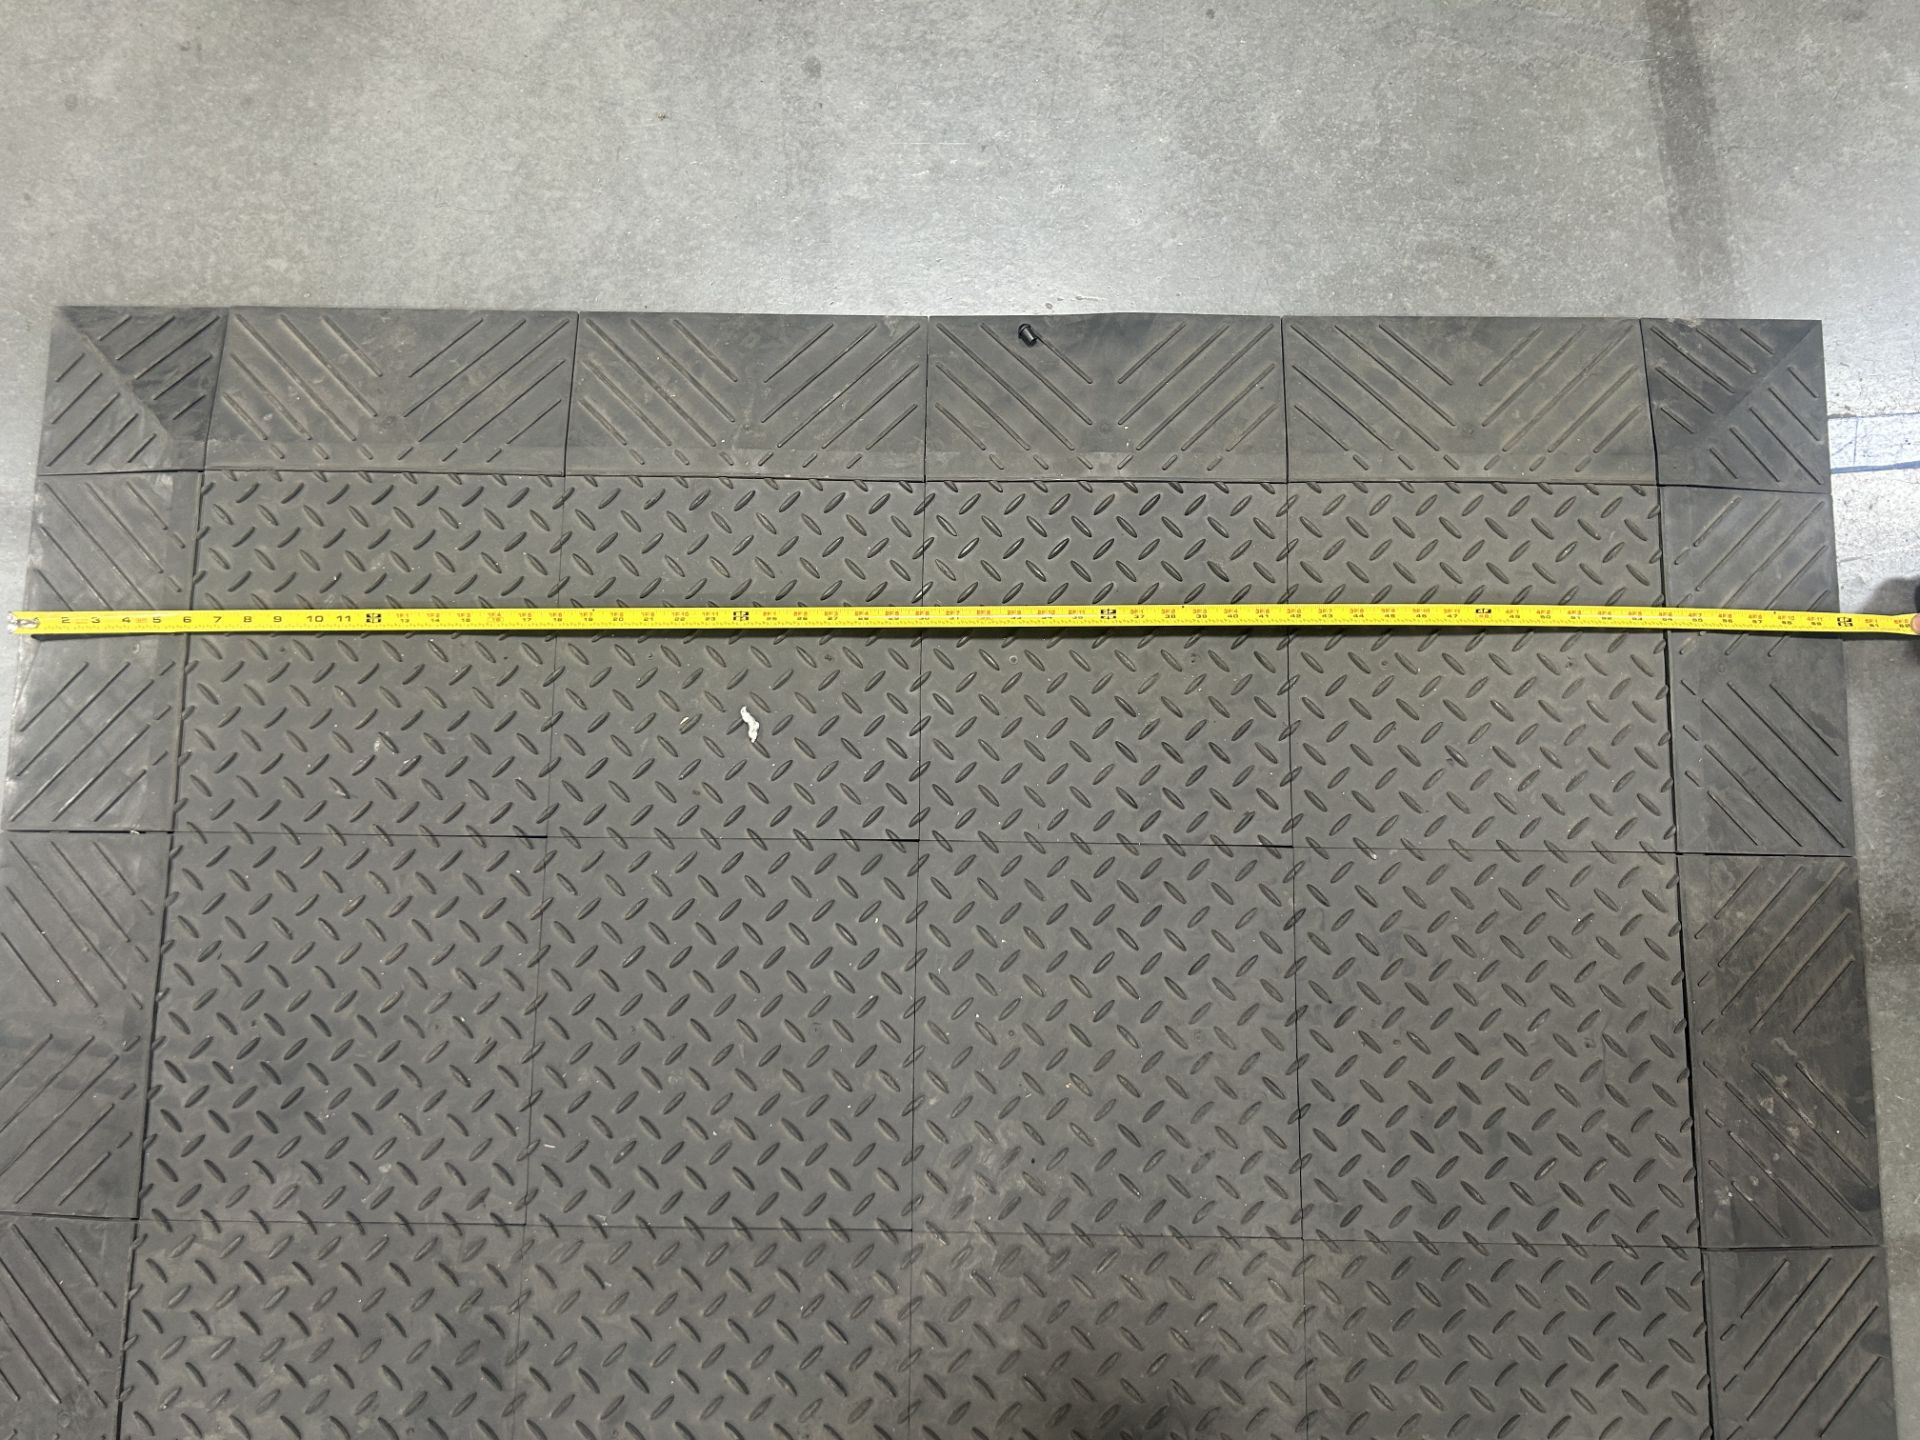 Industrial Floor Mat - Image 3 of 4